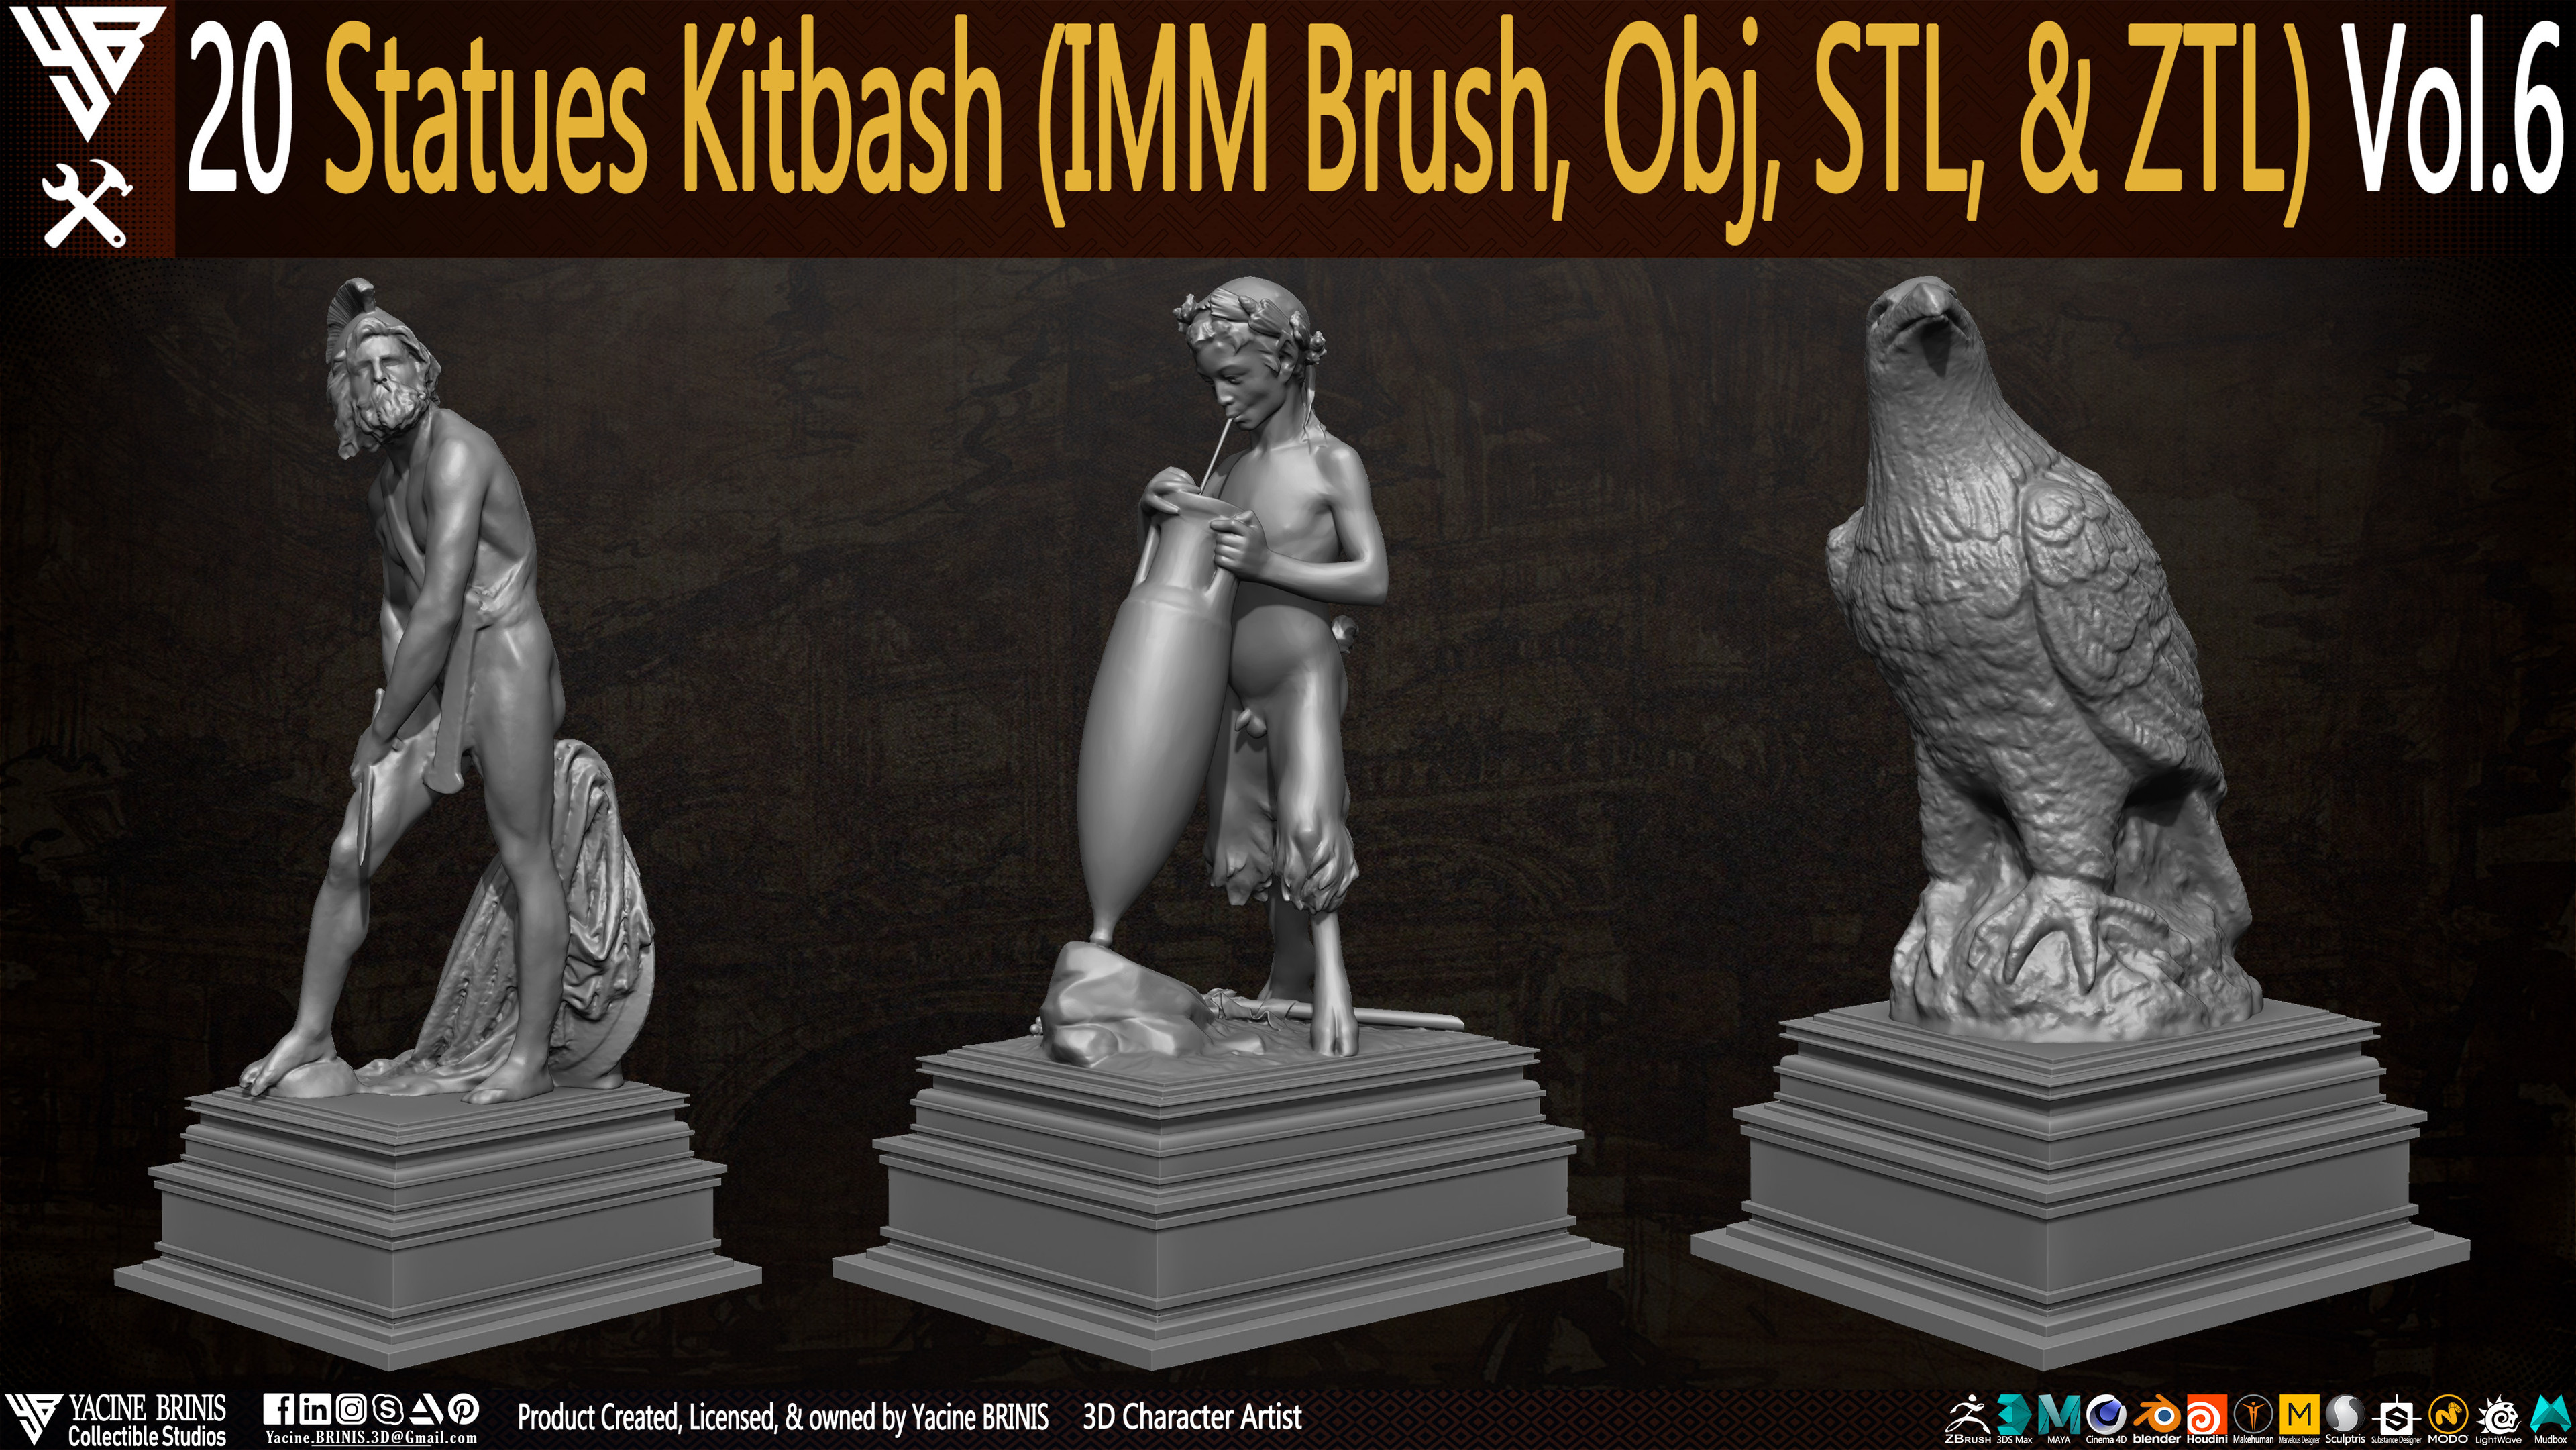 Statues Kitbash by yacine brinis Set 38